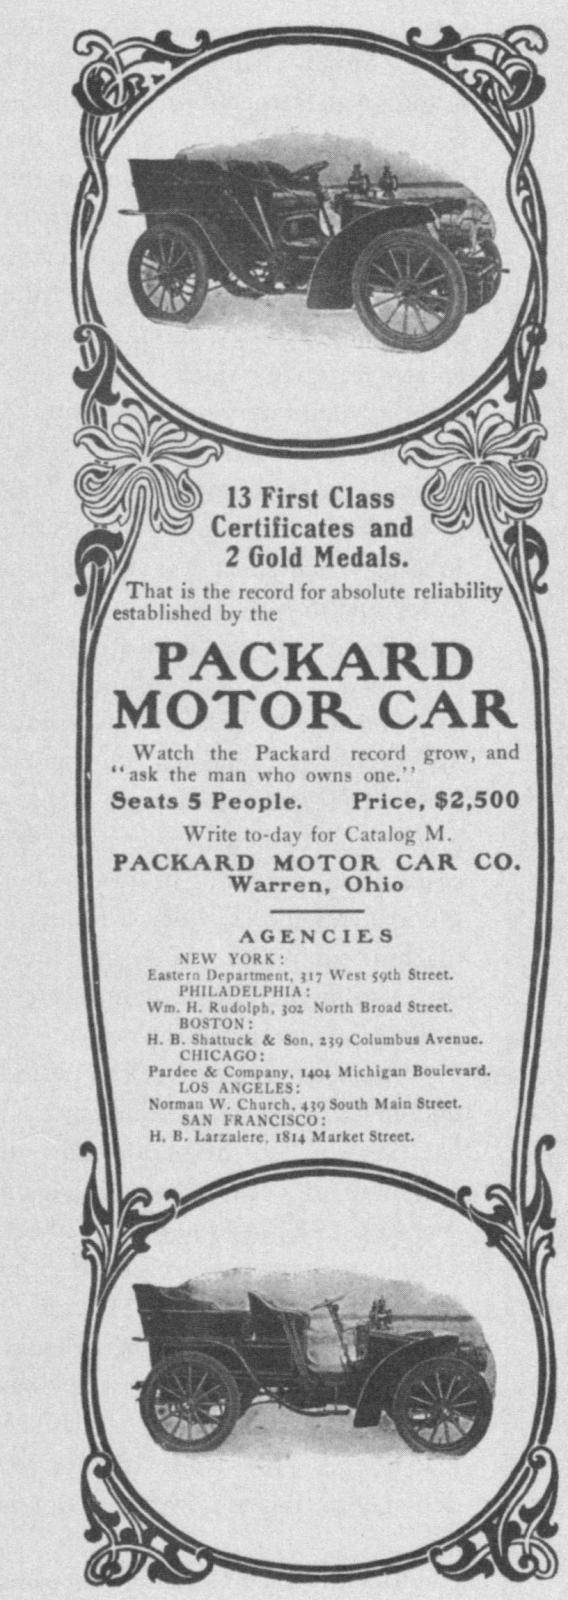 1903-04 PACKARD ADVERT-B&W